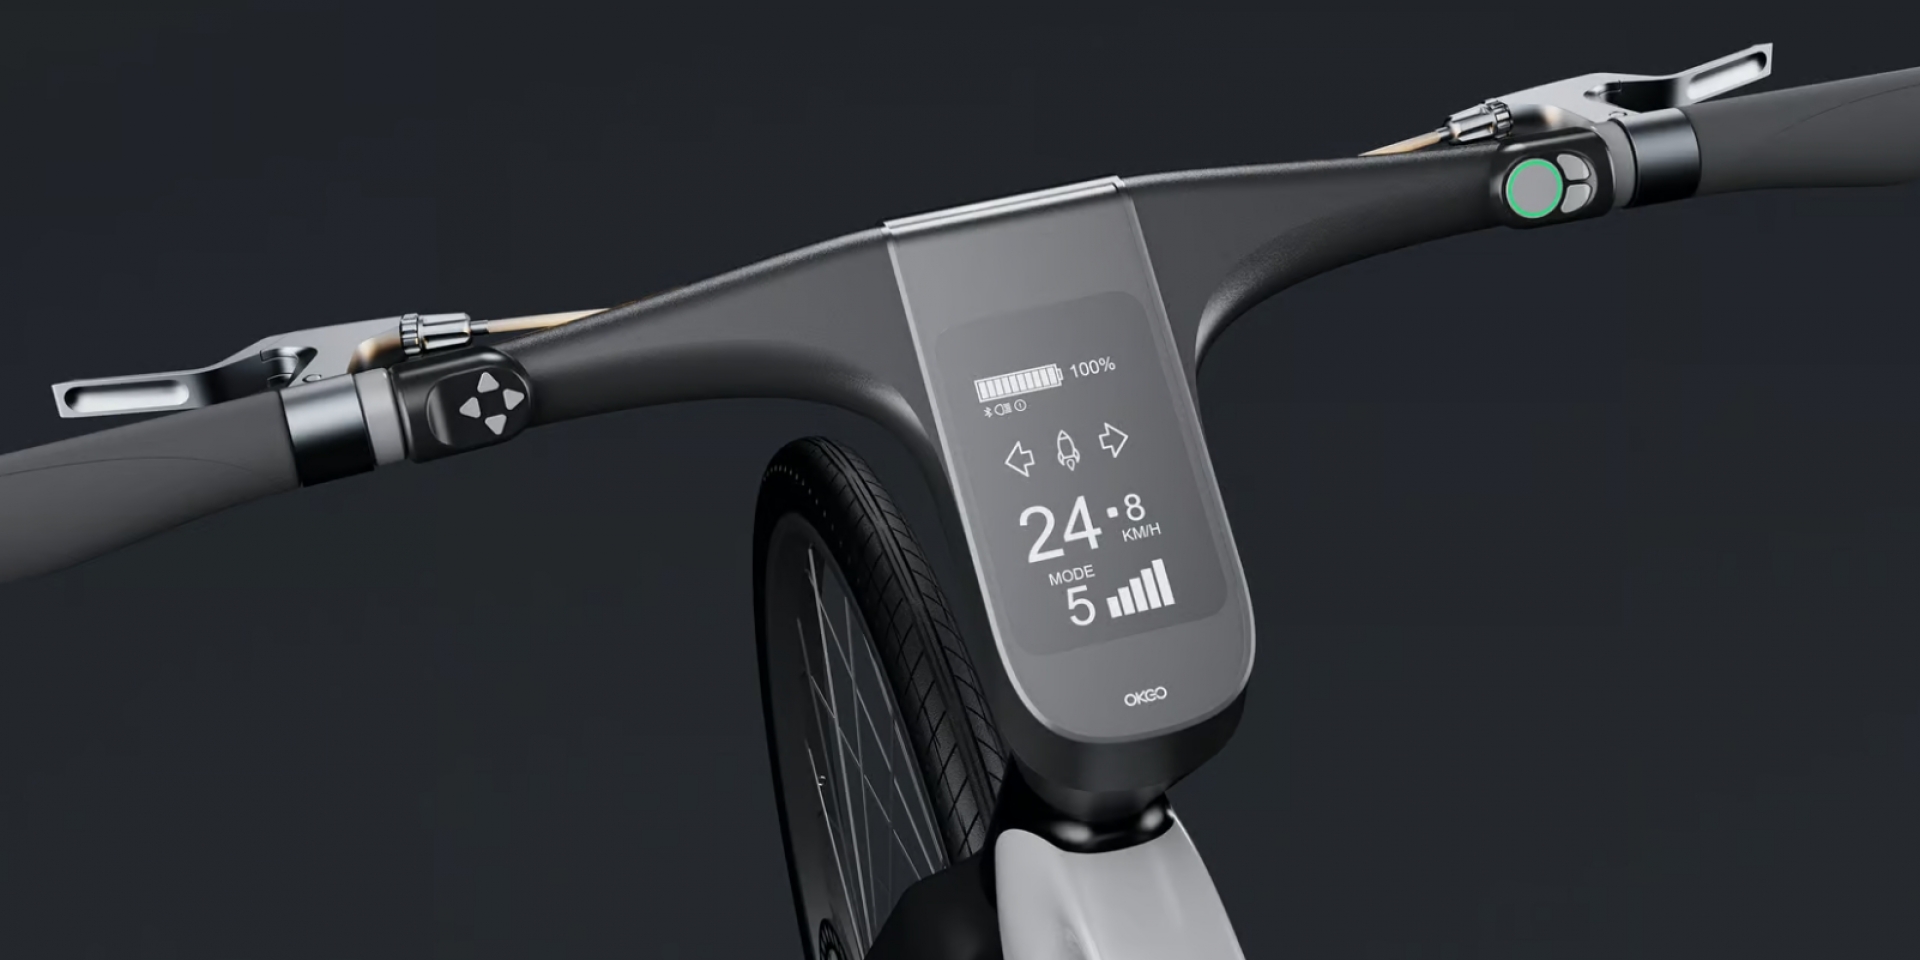 OKGO Smart E-Bike，搭載智慧儀表、雲端連線，能指紋、臉部辨識解鎖的電動腳踏車！